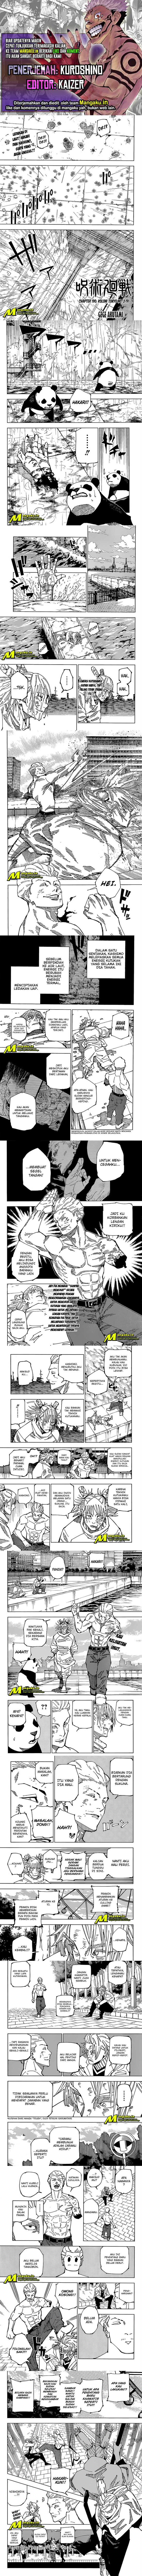 Jujutsu Kaisen: Chapter 190 - Page 1